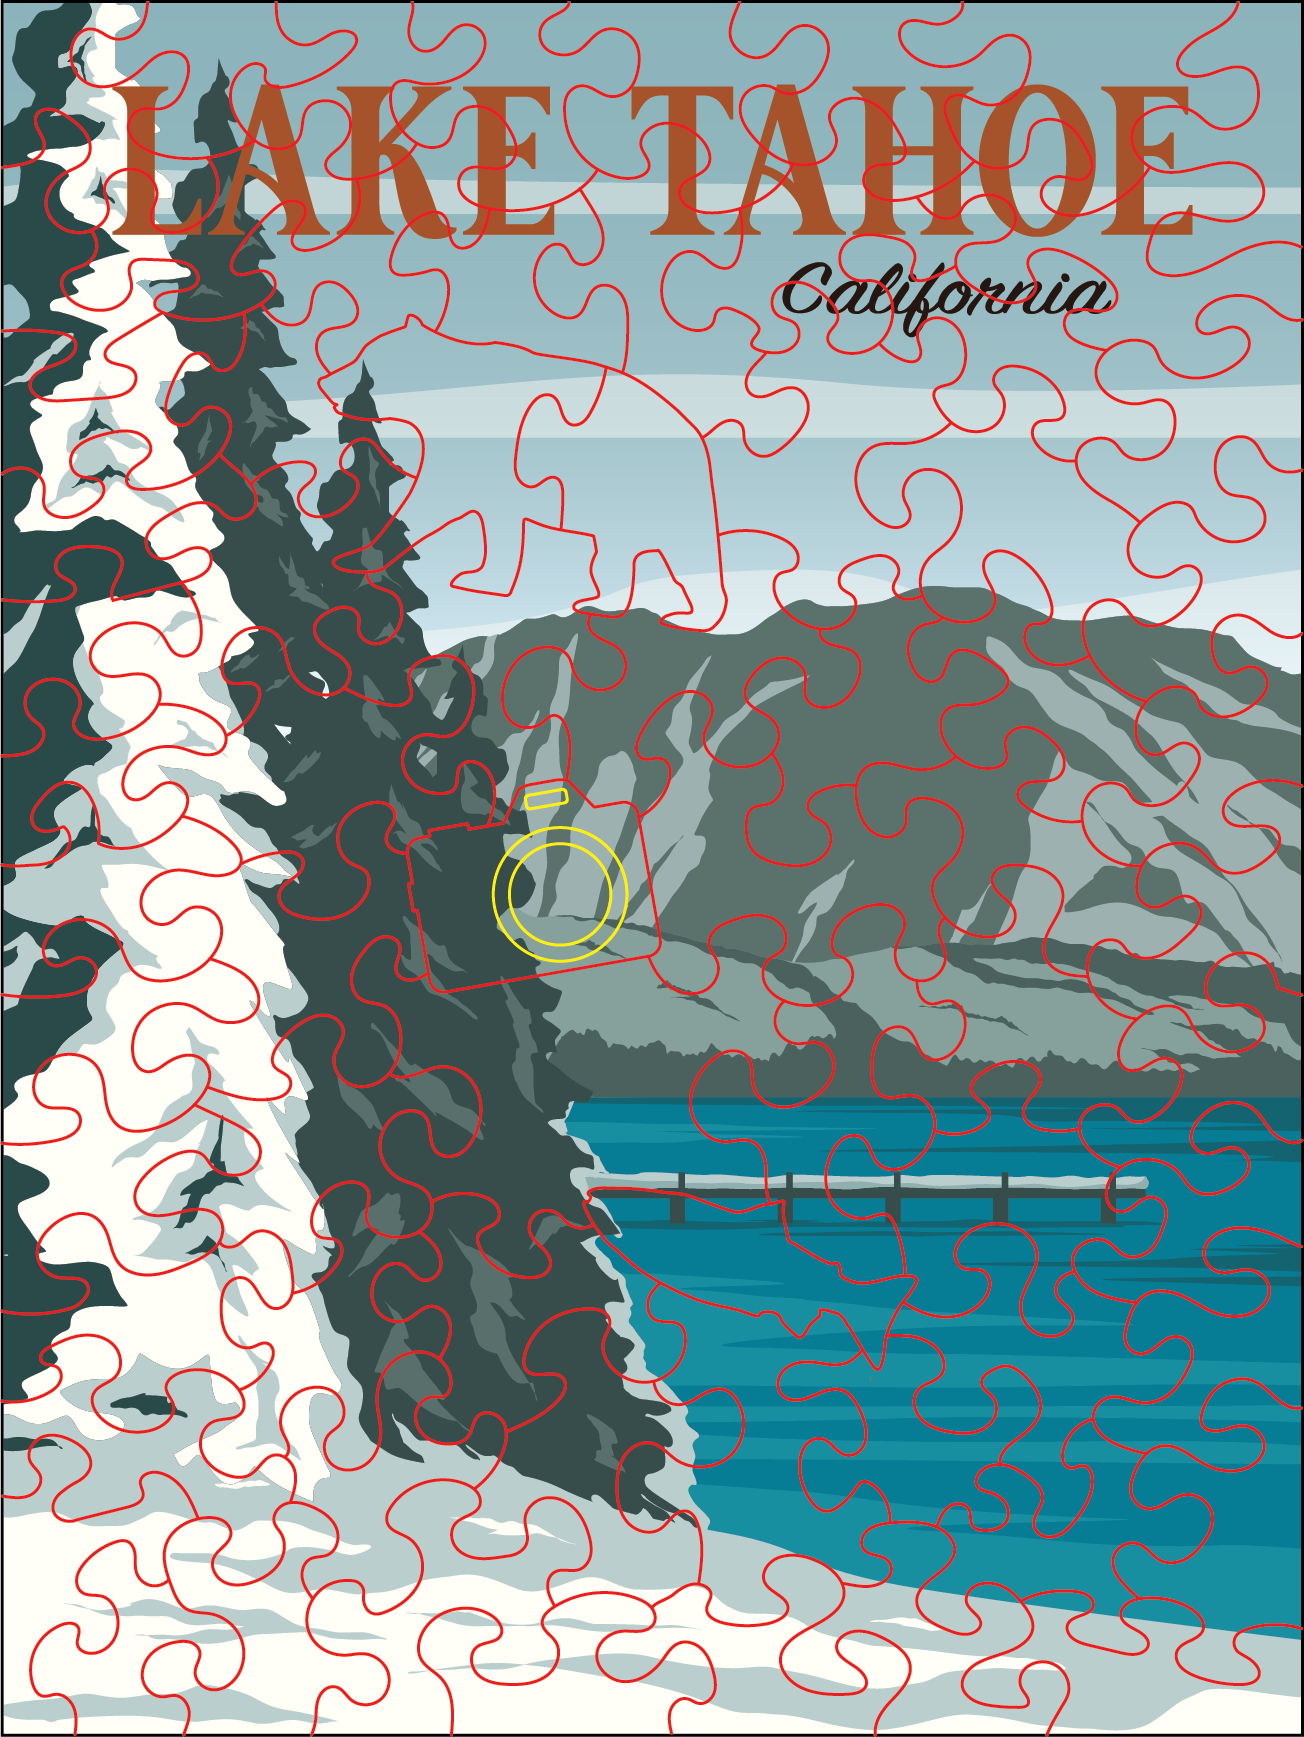 Lake Tahoe Poster